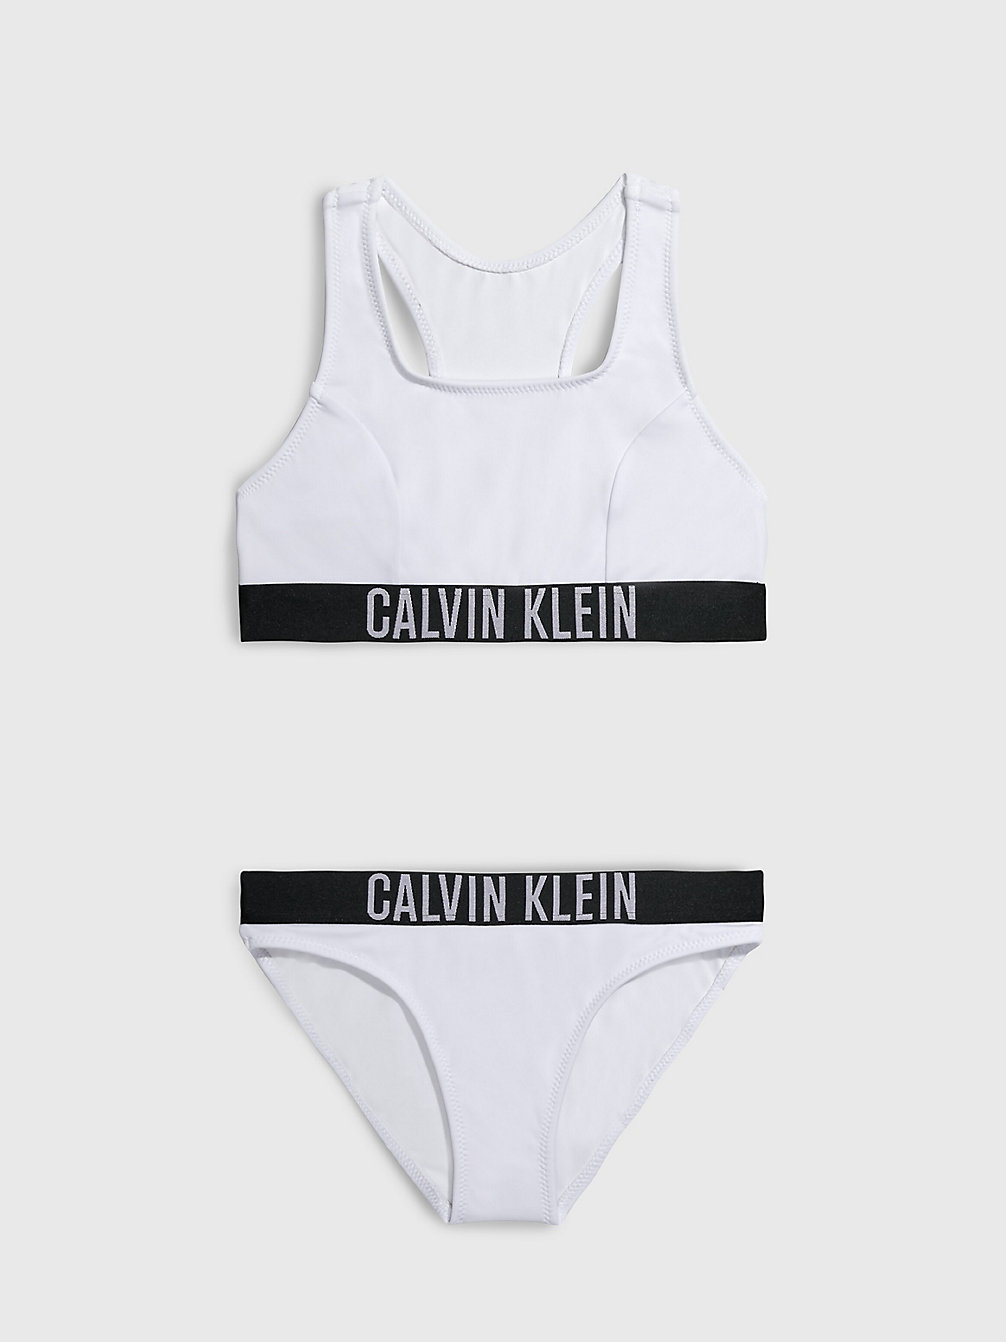 PVH CLASSIC WHITE Bikini-Set Mit Bralette Für Mädchen - Intense Power undefined girls Calvin Klein